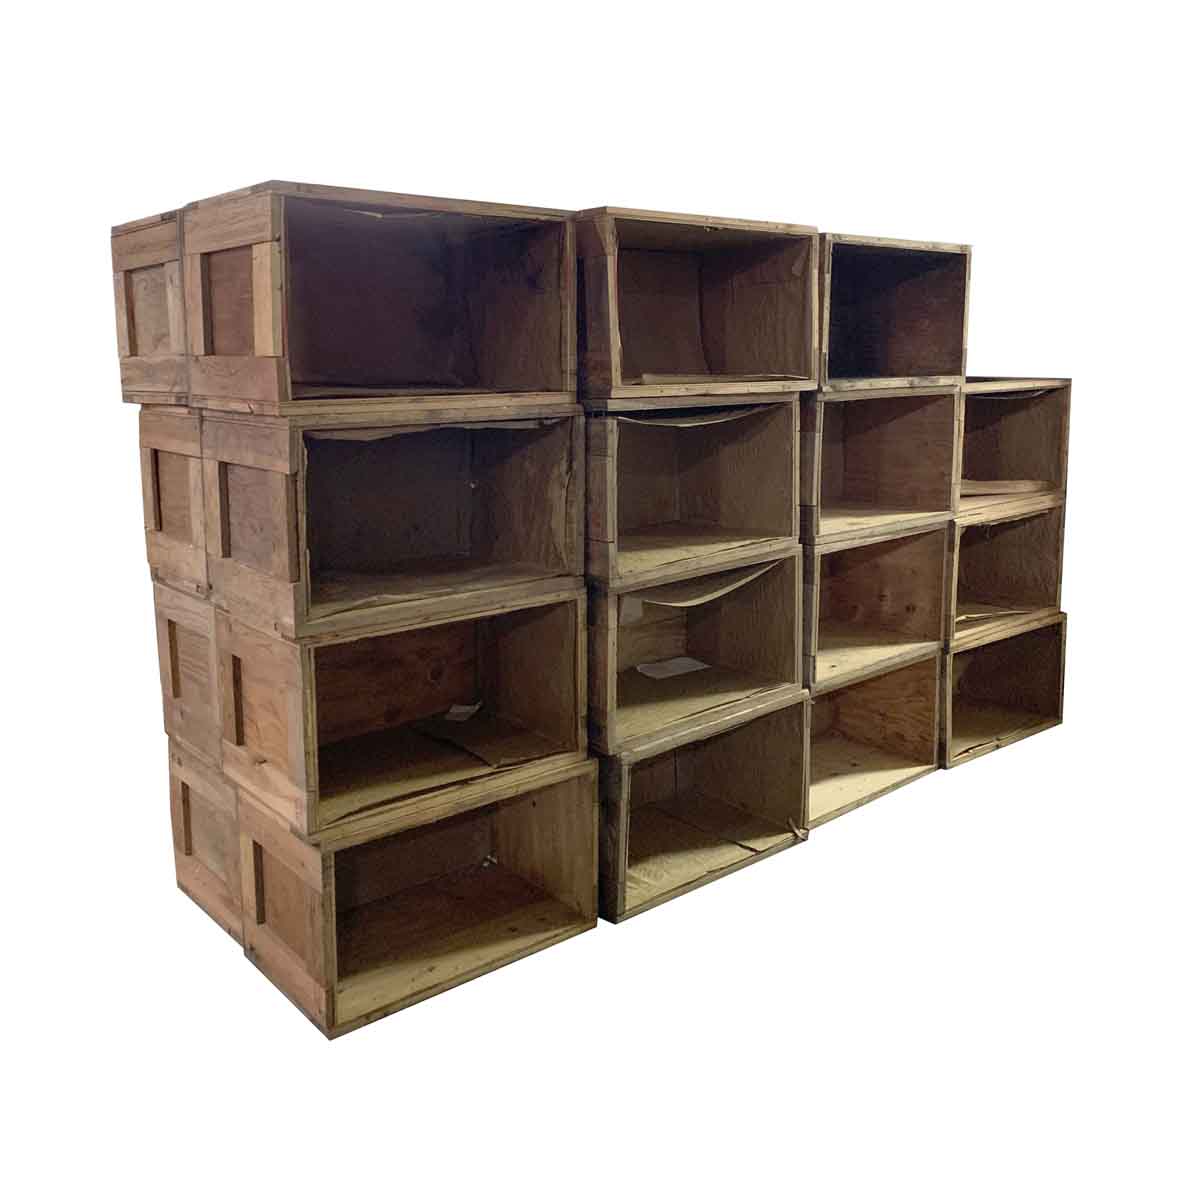 Vintage Pine Wooden Storage Crate, Wooden Storage Bin Shelves